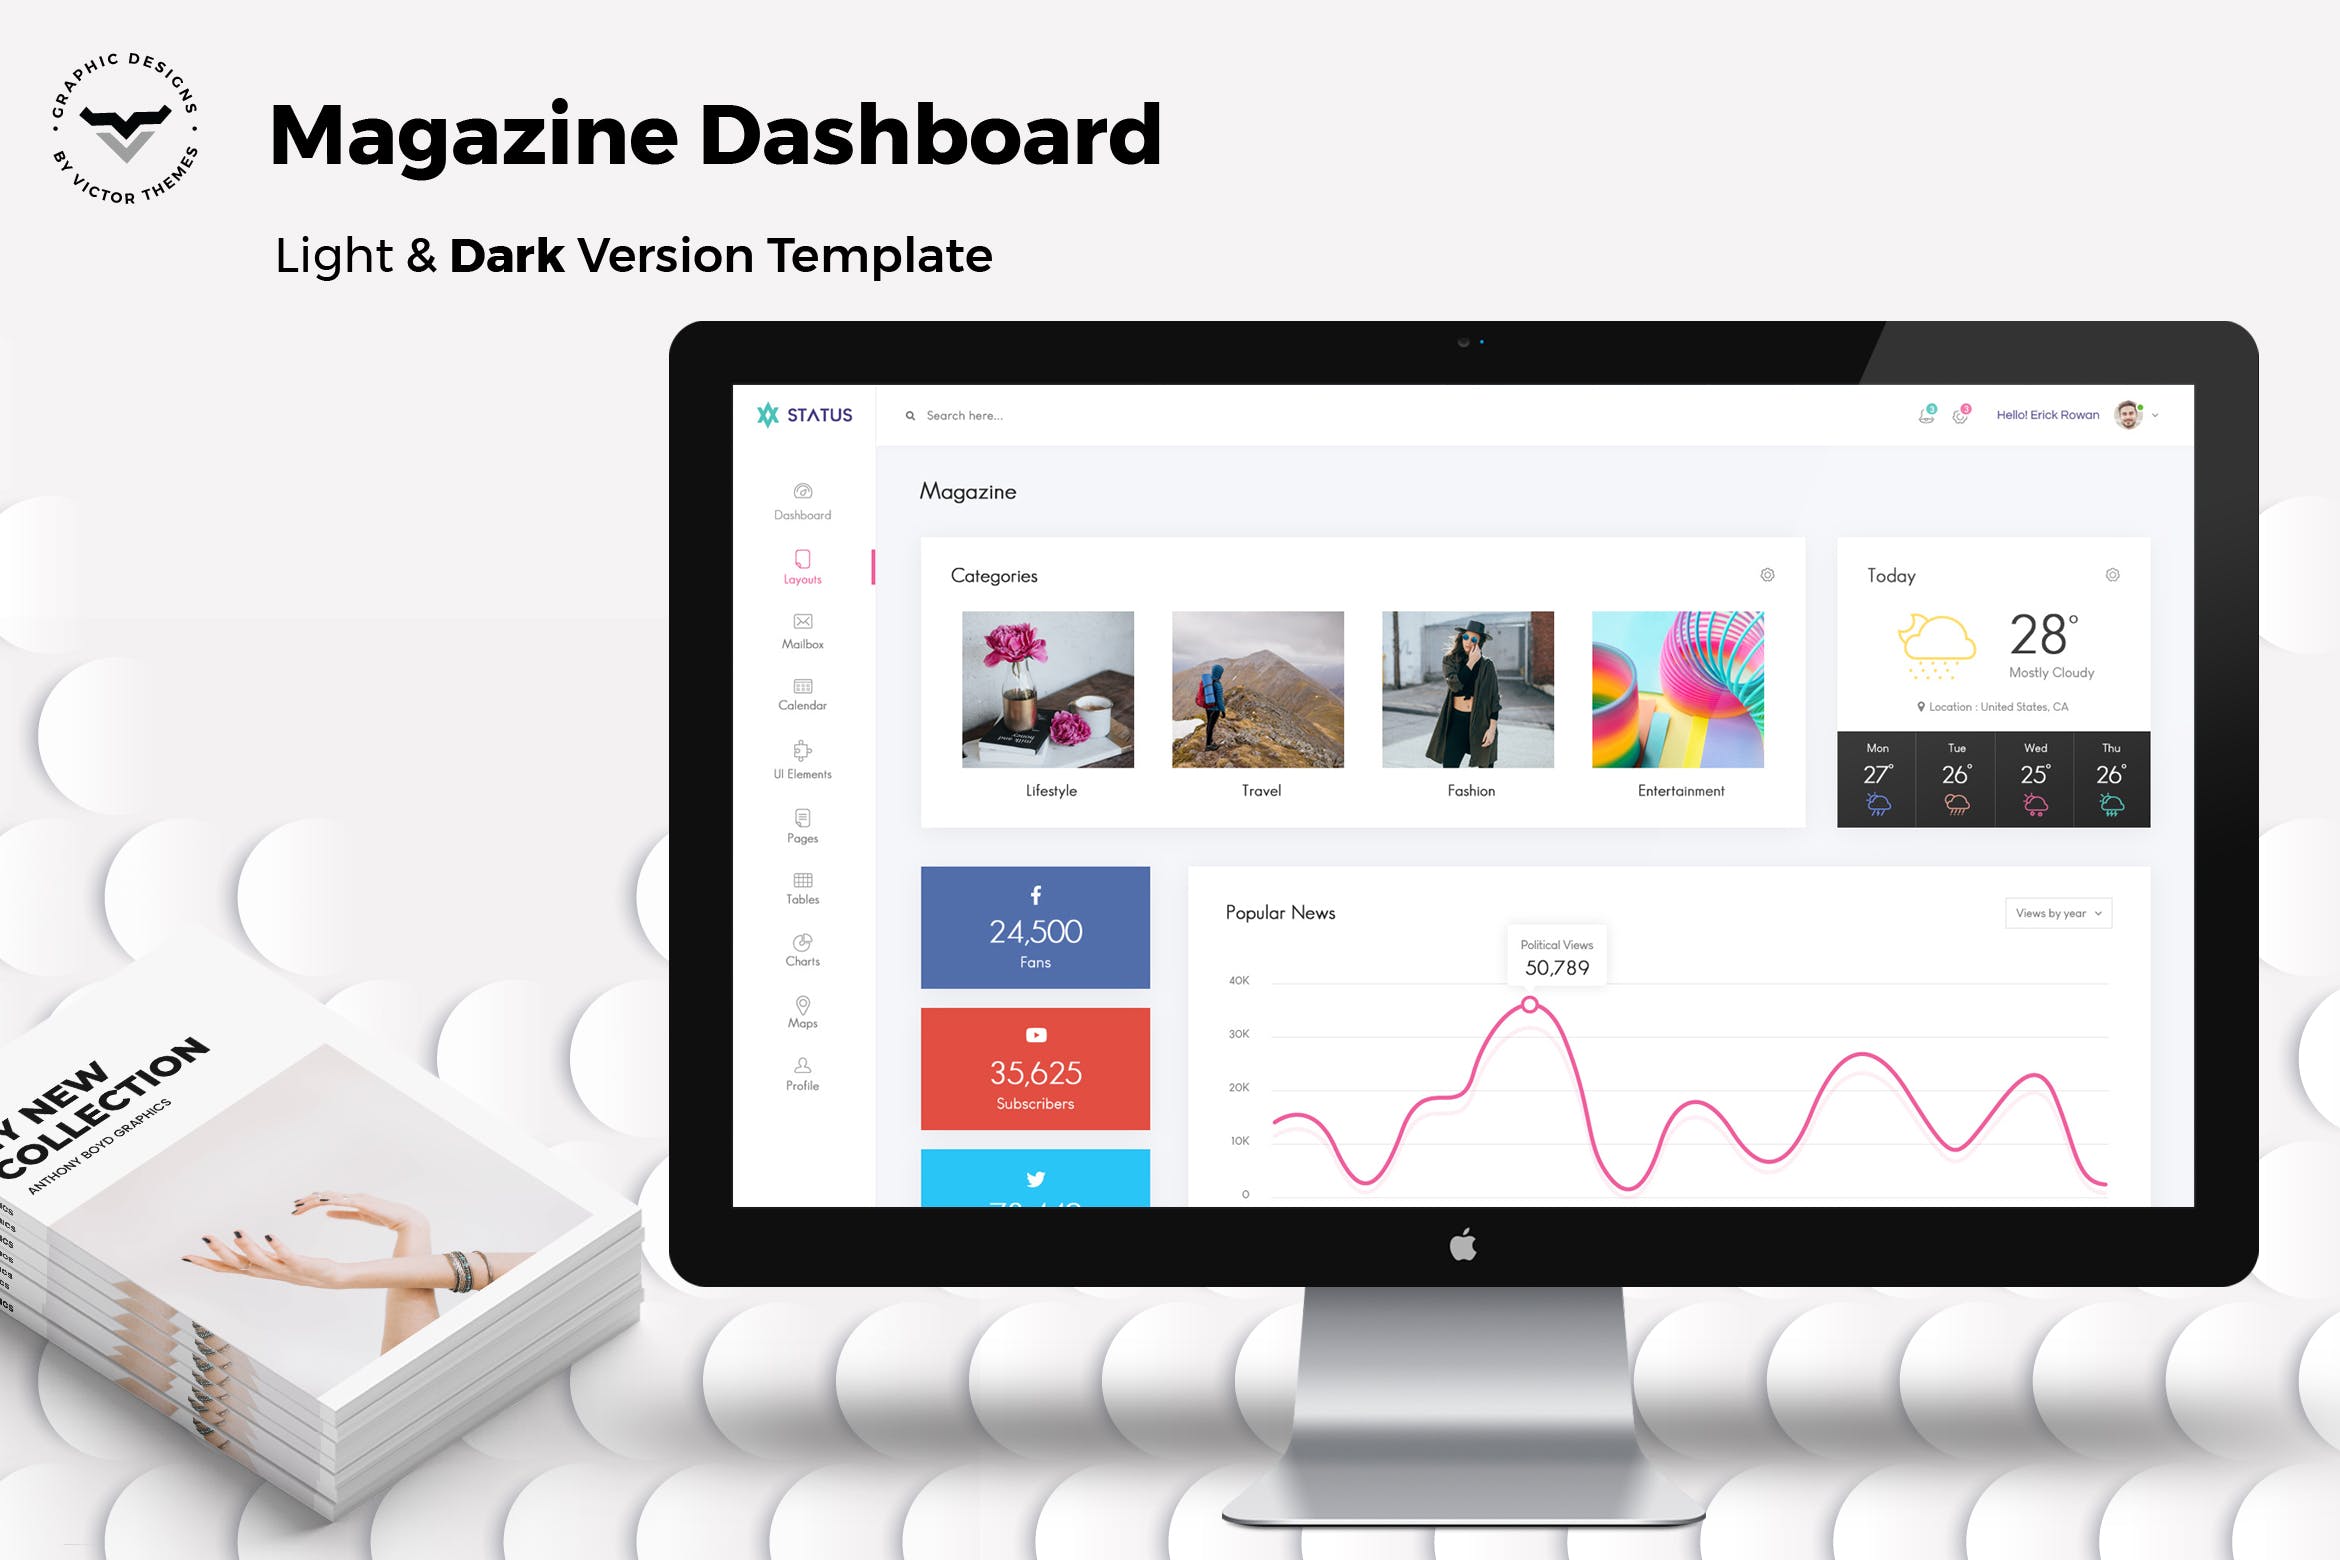 电子杂志阅读平台后台管理界面UI设计模板 Magazine Admin Dashboard UI Kit插图